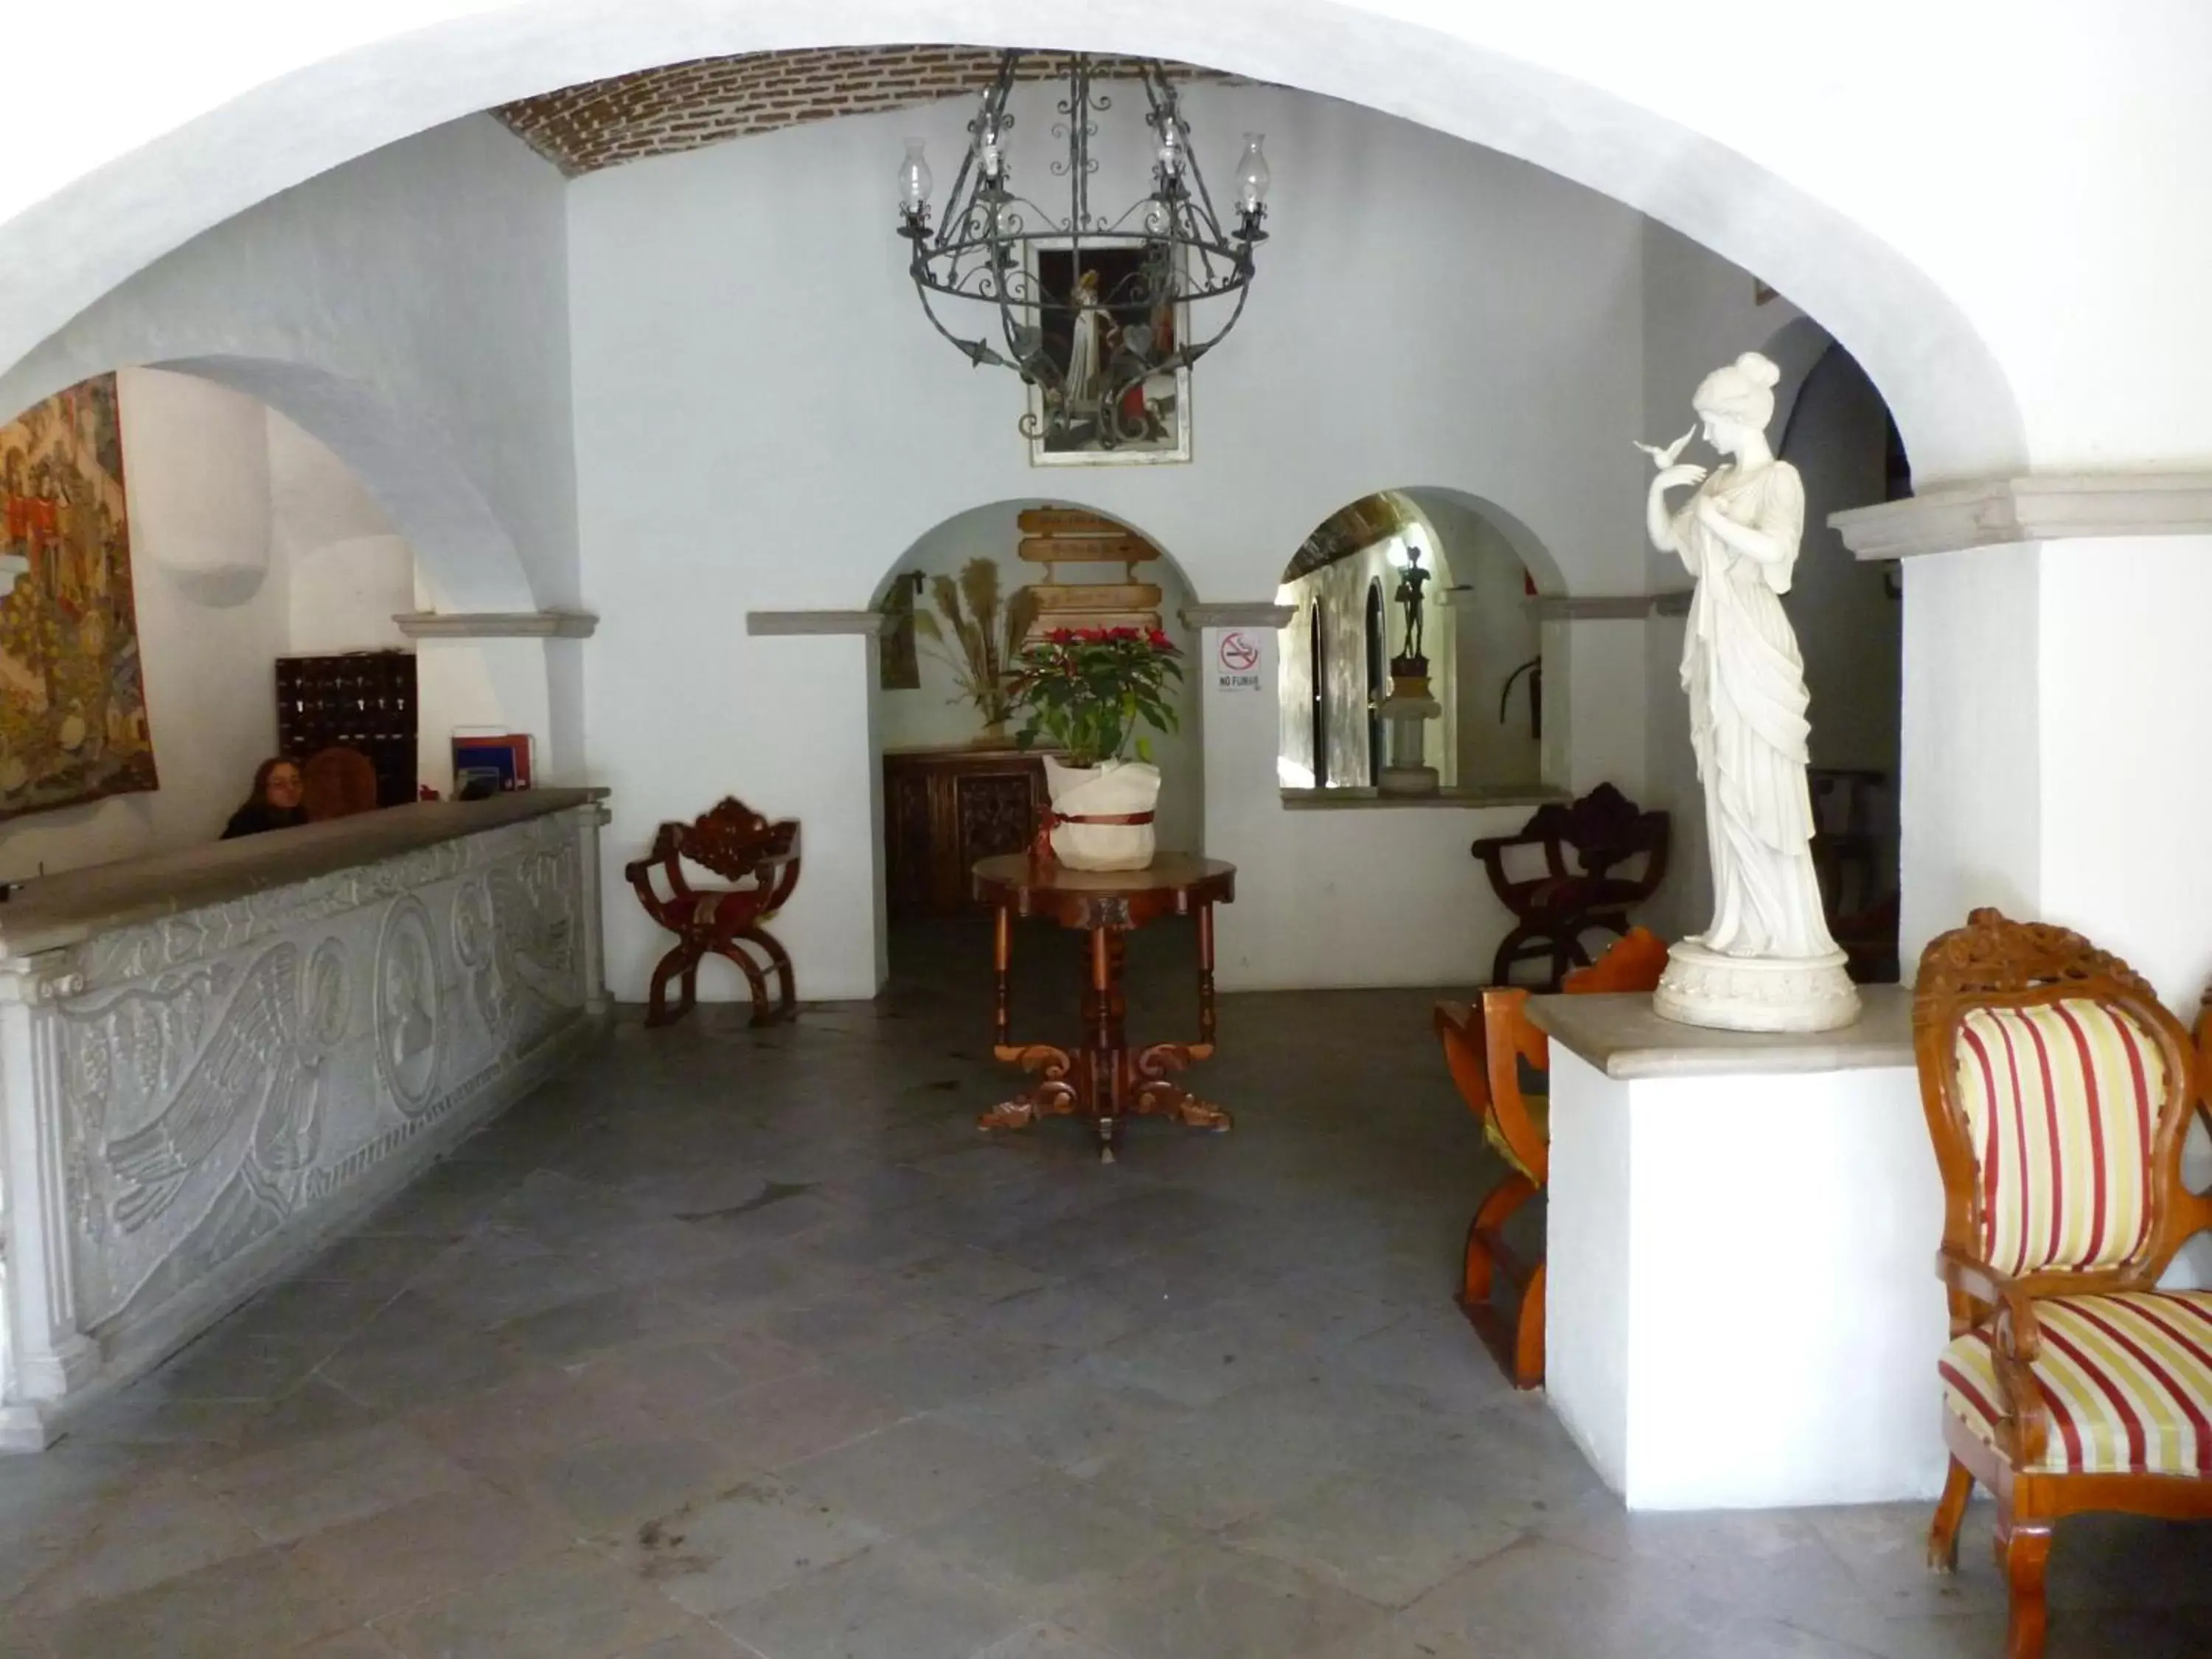 Lobby or reception, Lobby/Reception in Hotel Castillo de Santa Cecilia